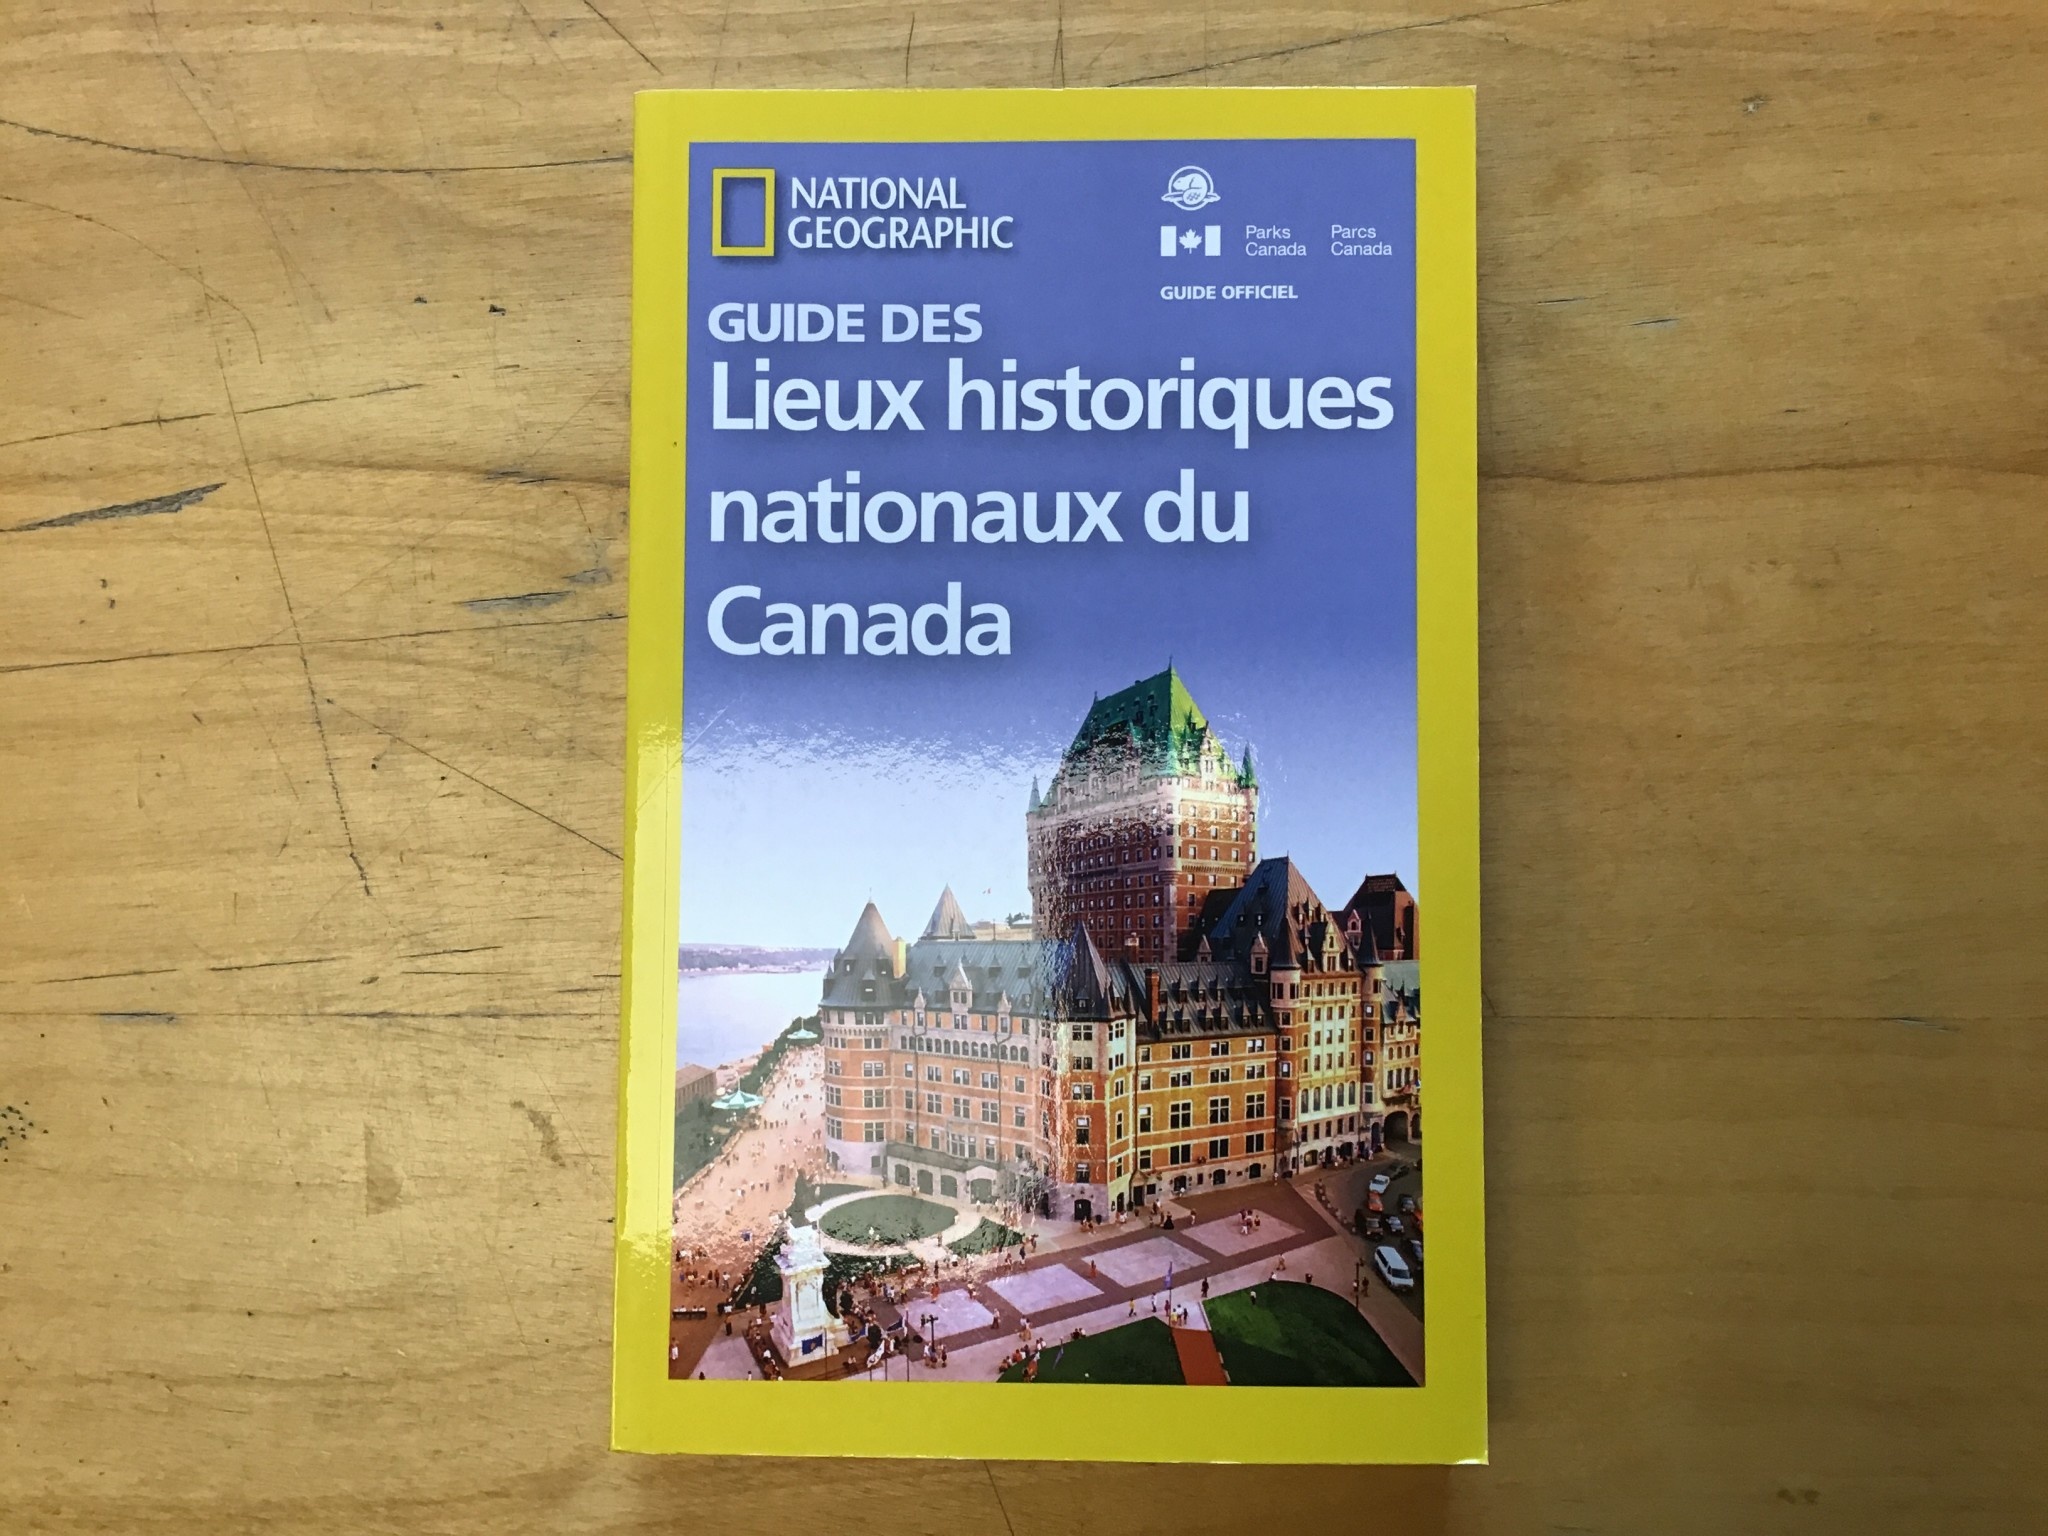 GUIDE DE LIEUX HISTORIQUES NATIONAUX DU CANADA